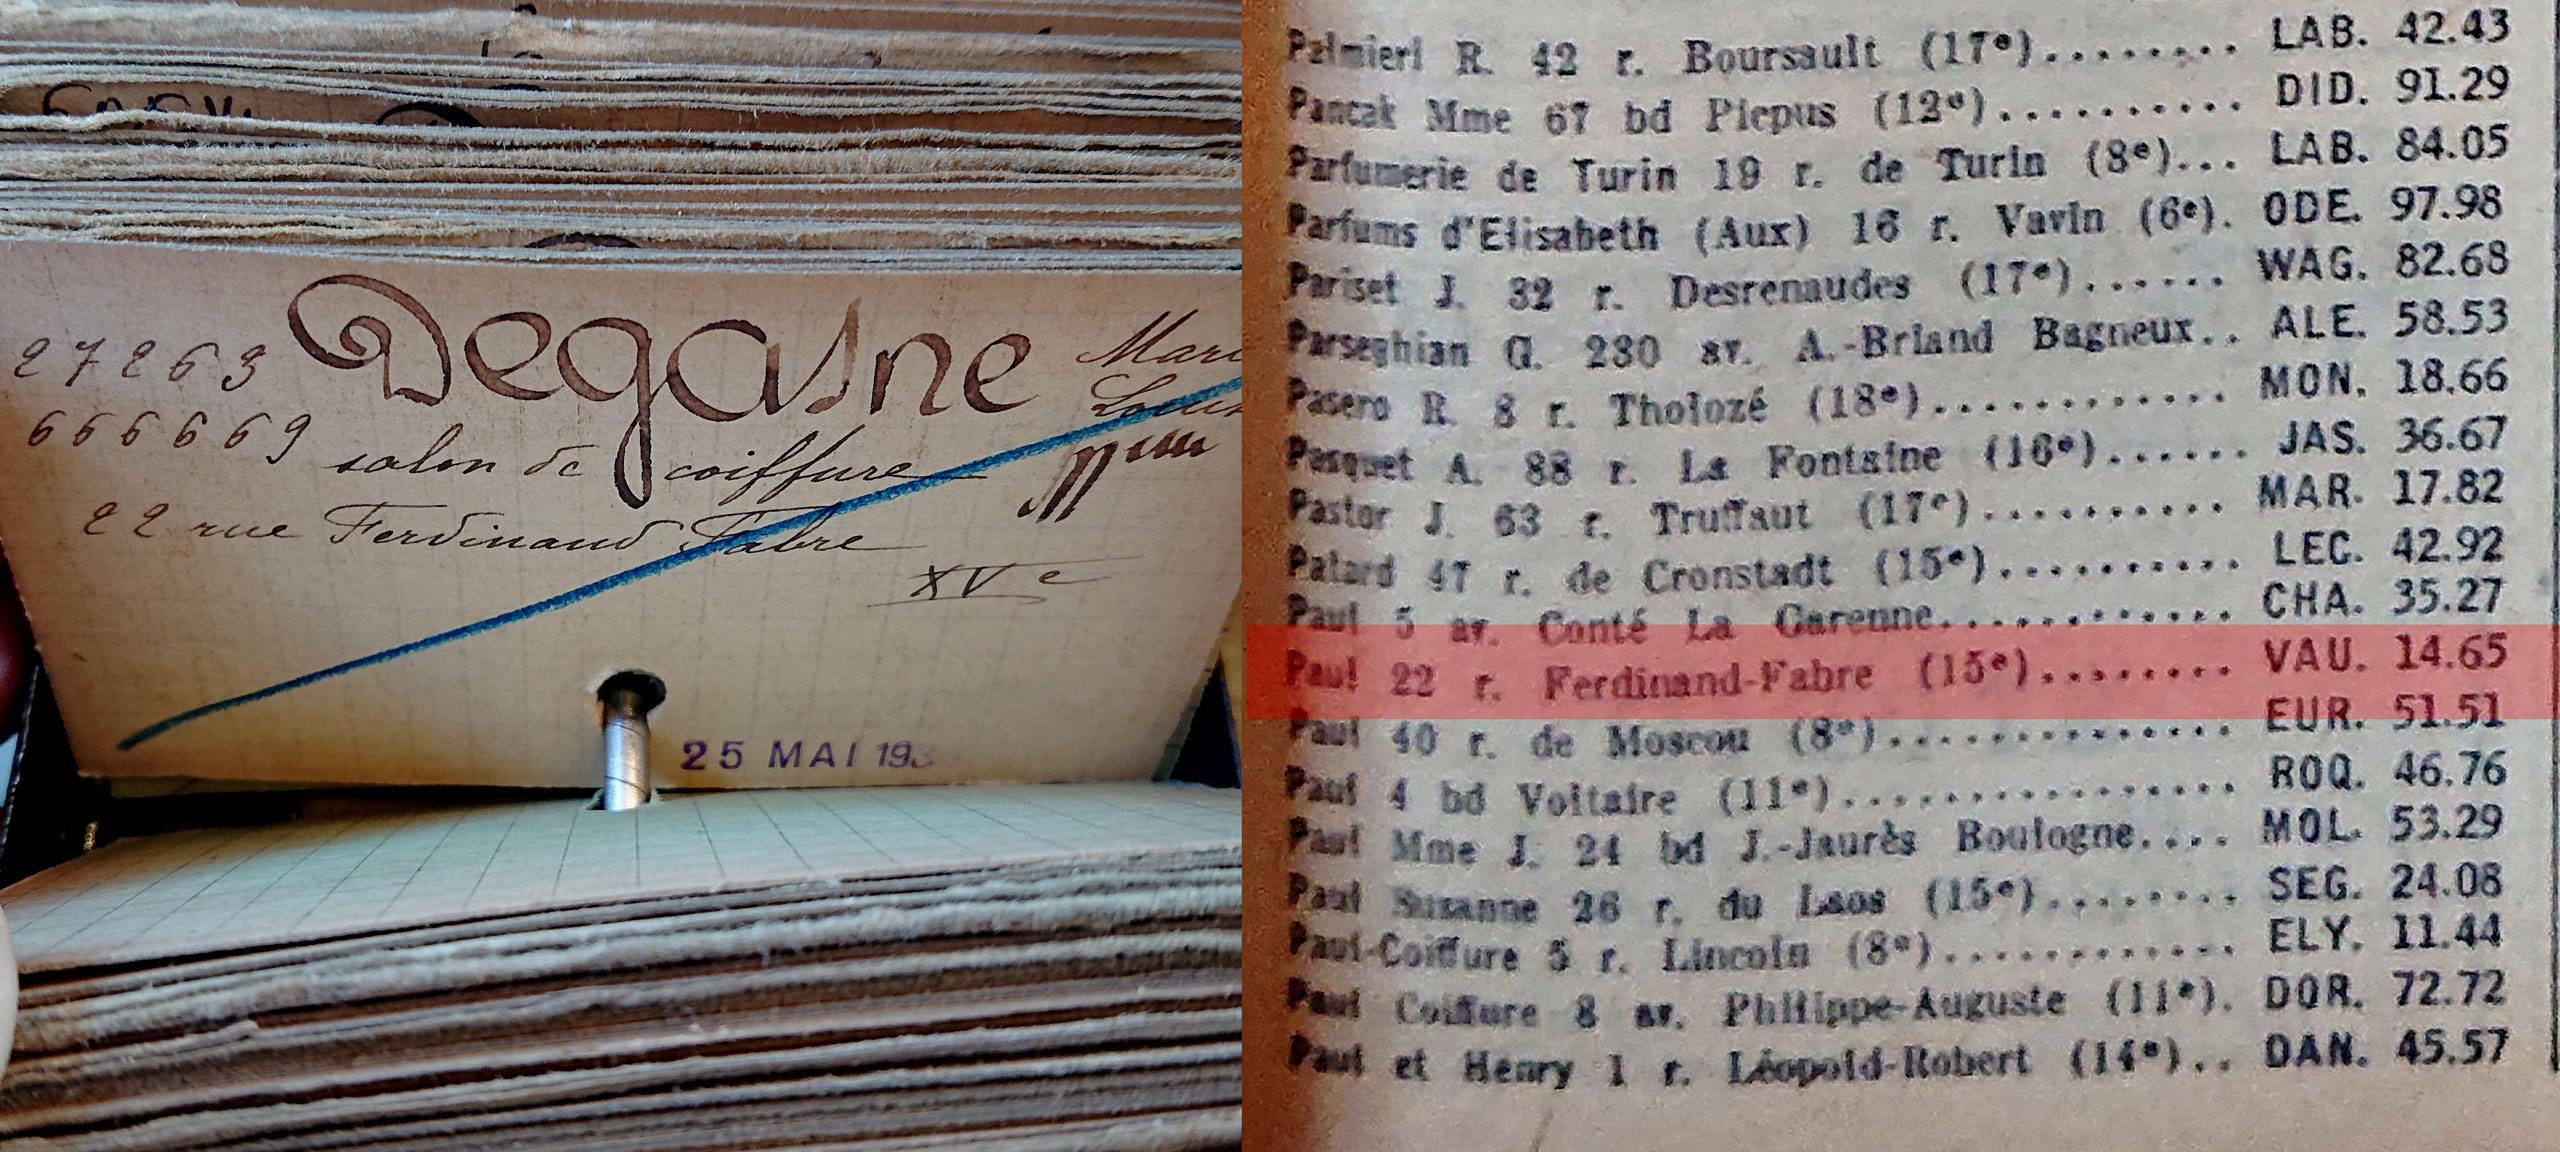 En fait, Degasne était le nom d’un salon de coiffure situé 22 rue Ferdinand Fabre, tout à côté de la rue de Javel (Registre du commerce de Paris). Tenu par une certaine Marie-Louise Degasne, ce salon de coiffure s’appelait… « Paul », comme le « grand amour » de Marcelle Pichon ! (voir pastille 26) (Bottin téléphonique par professions de l’année 1954, rubrique « coiffeurs pour dames ».)<br><br>